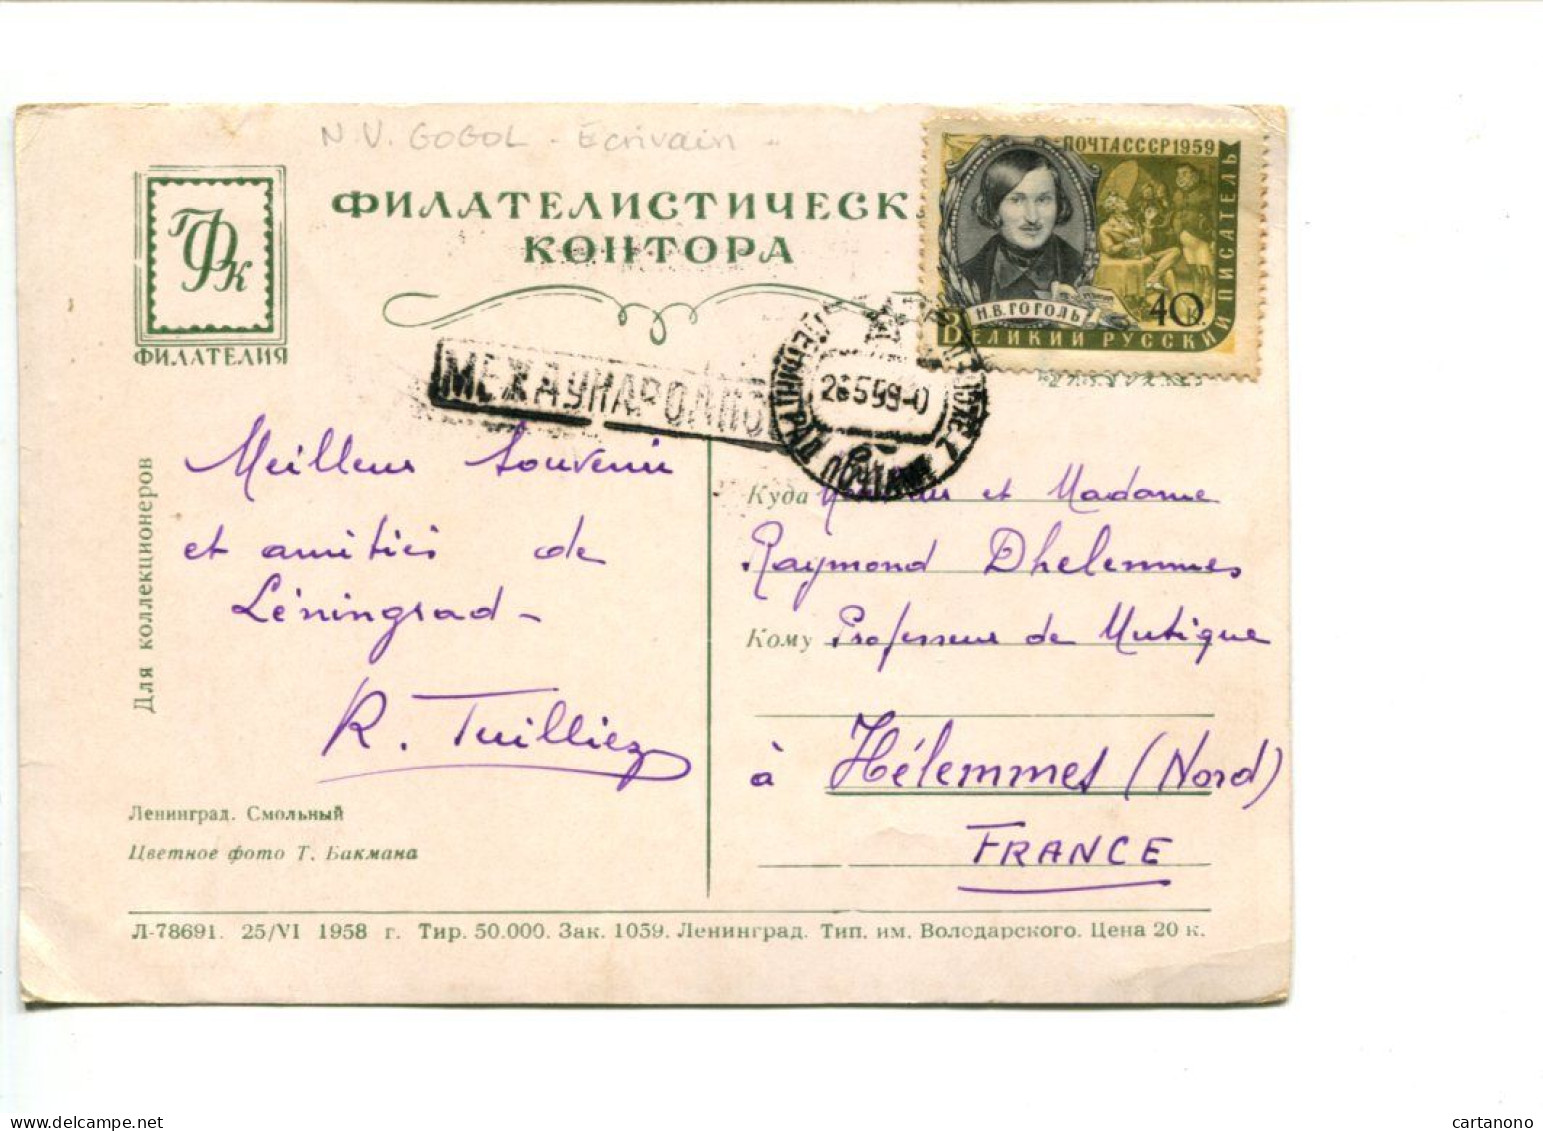 URSS - Affranchissement Sur Carte Postale - Ecrivain N.V. GOGOL - Covers & Documents